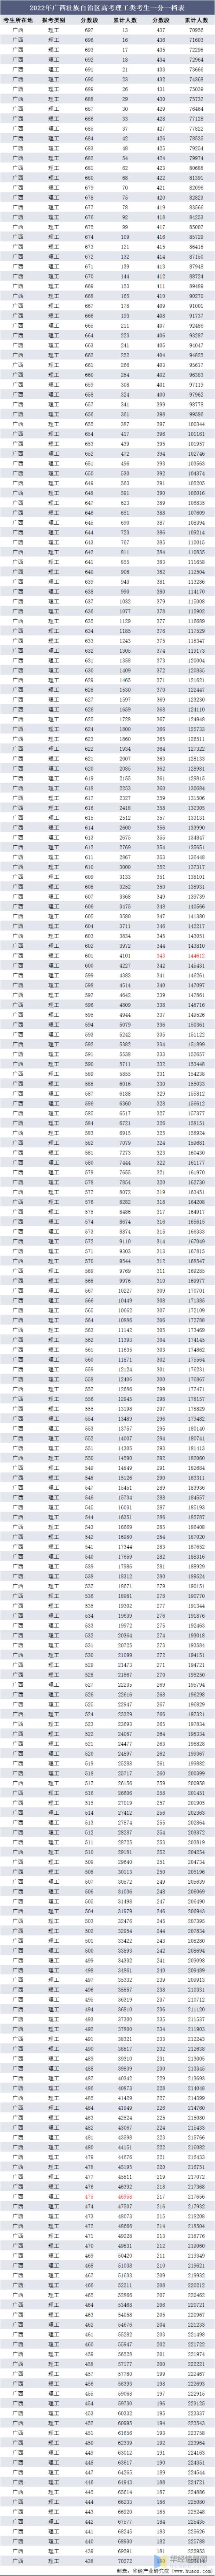 2022广西高考专科分数线预测(广西壮族自治区高考分数线2020)